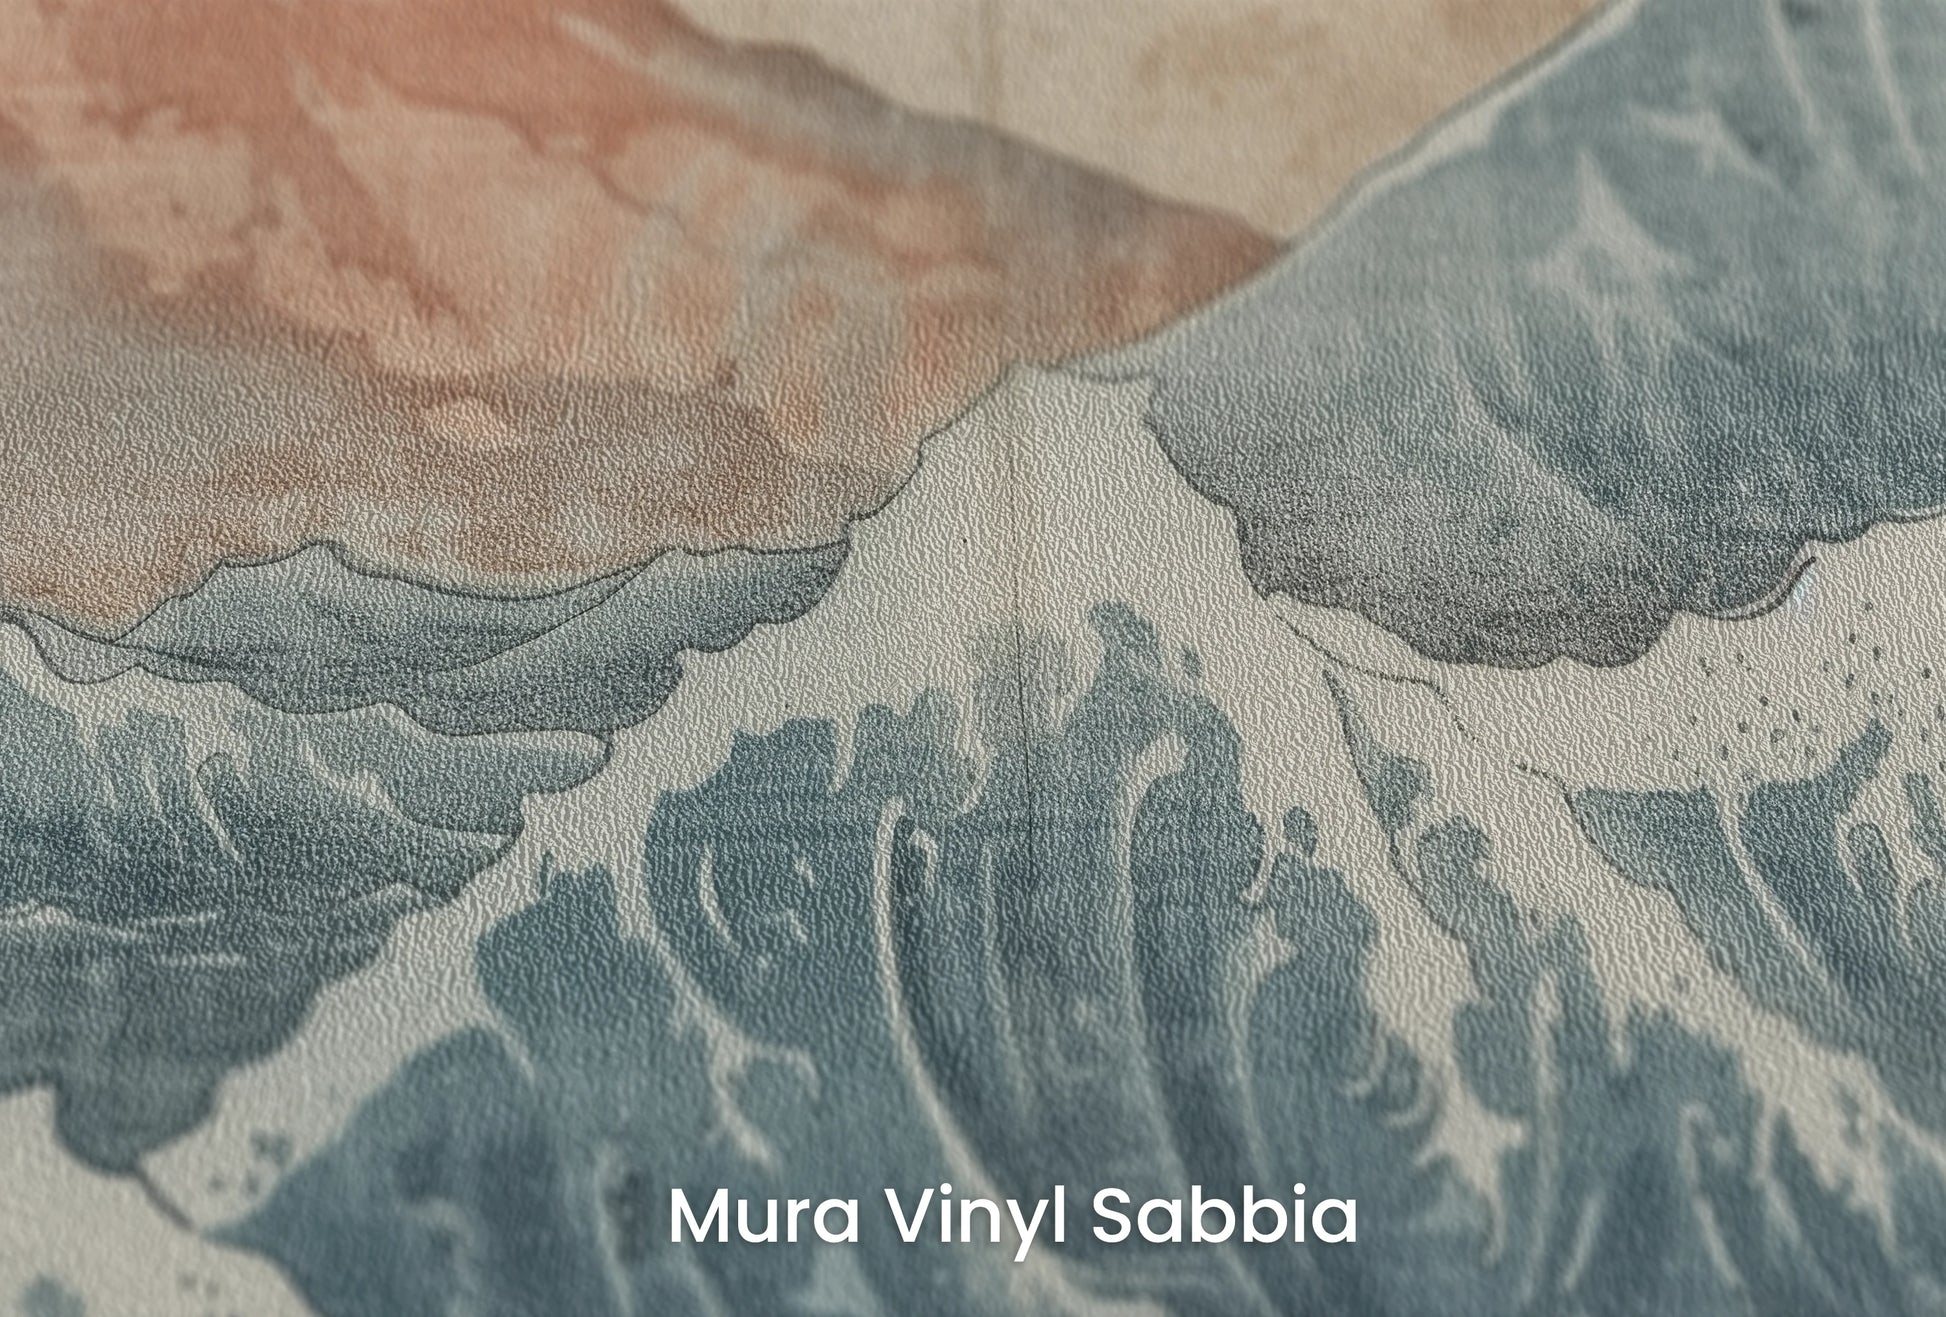 Zbliżenie na artystyczną fototapetę o nazwie Dawn over Fuji na podłożu Mura Vinyl Sabbia struktura grubego ziarna piasku.